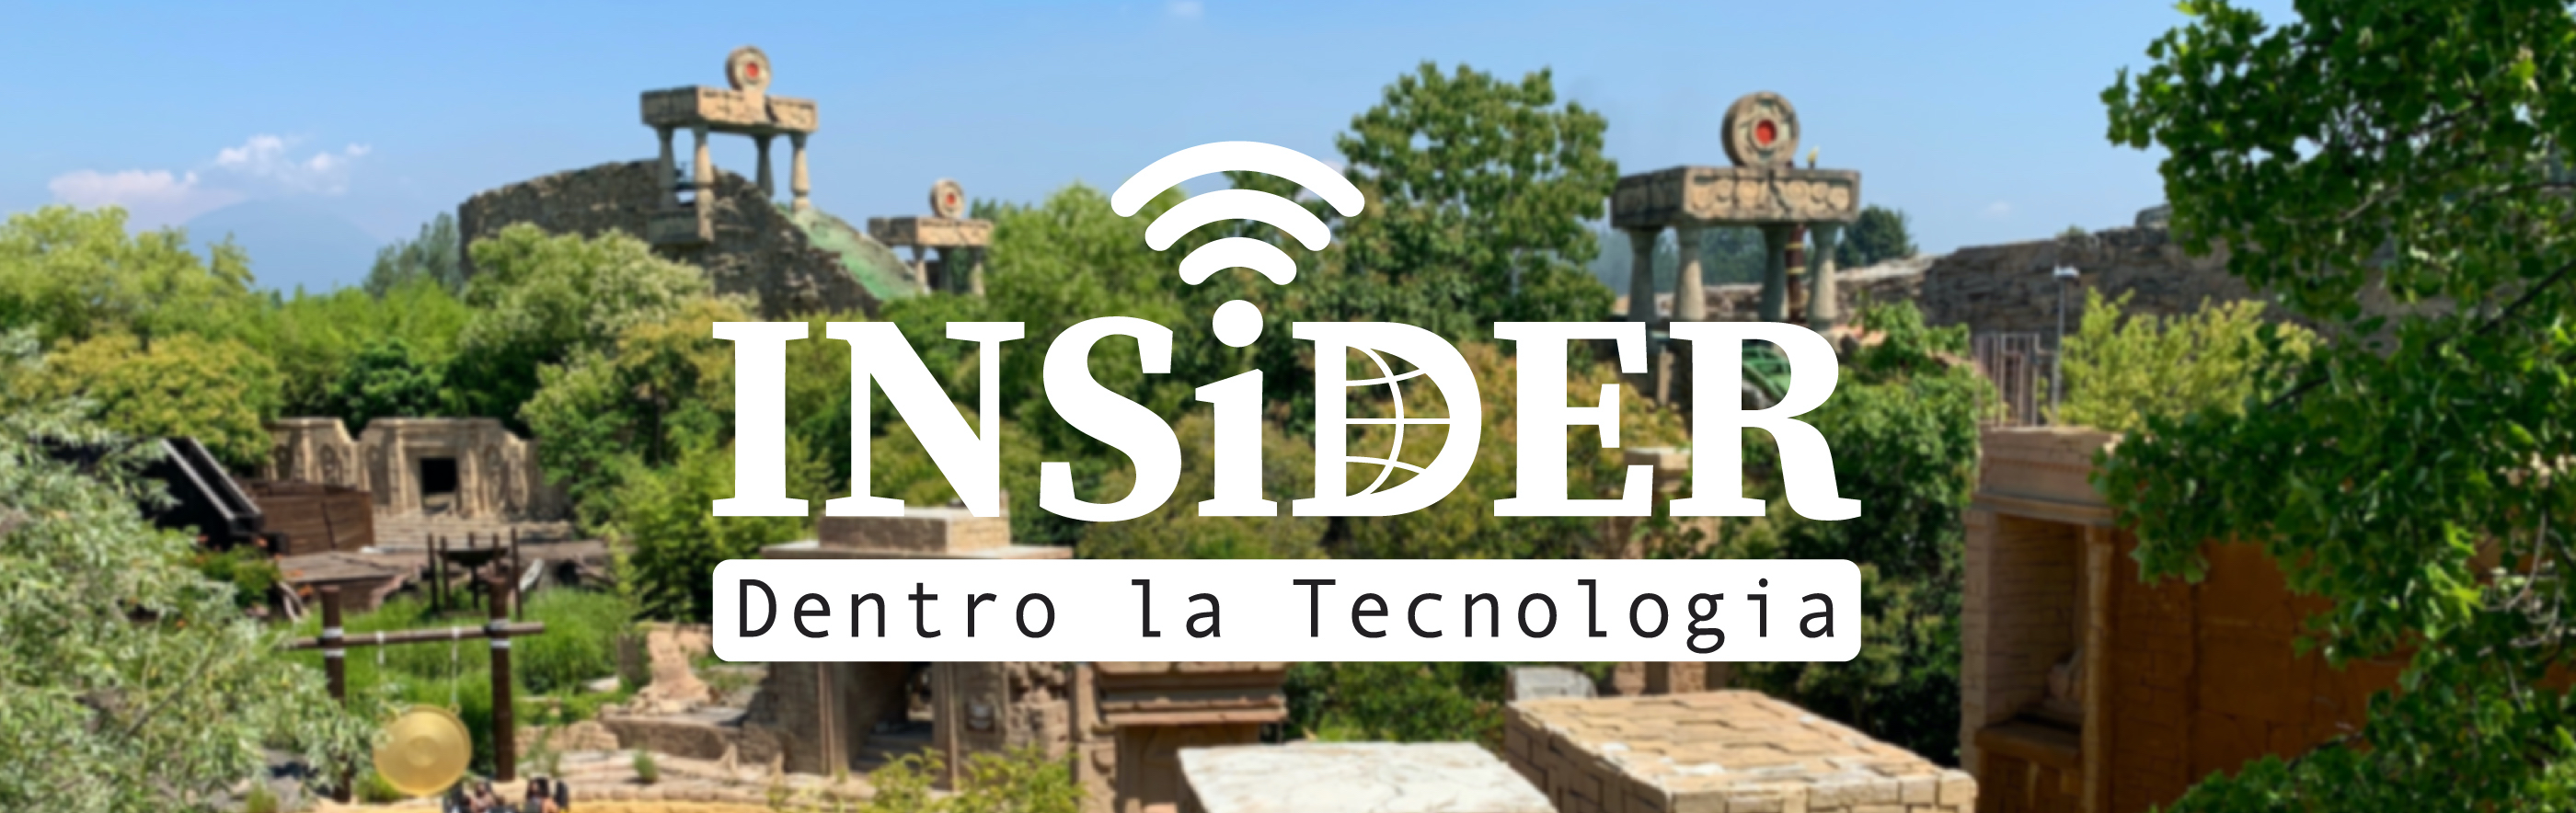 INSiDER - Dentro la Tecnologia